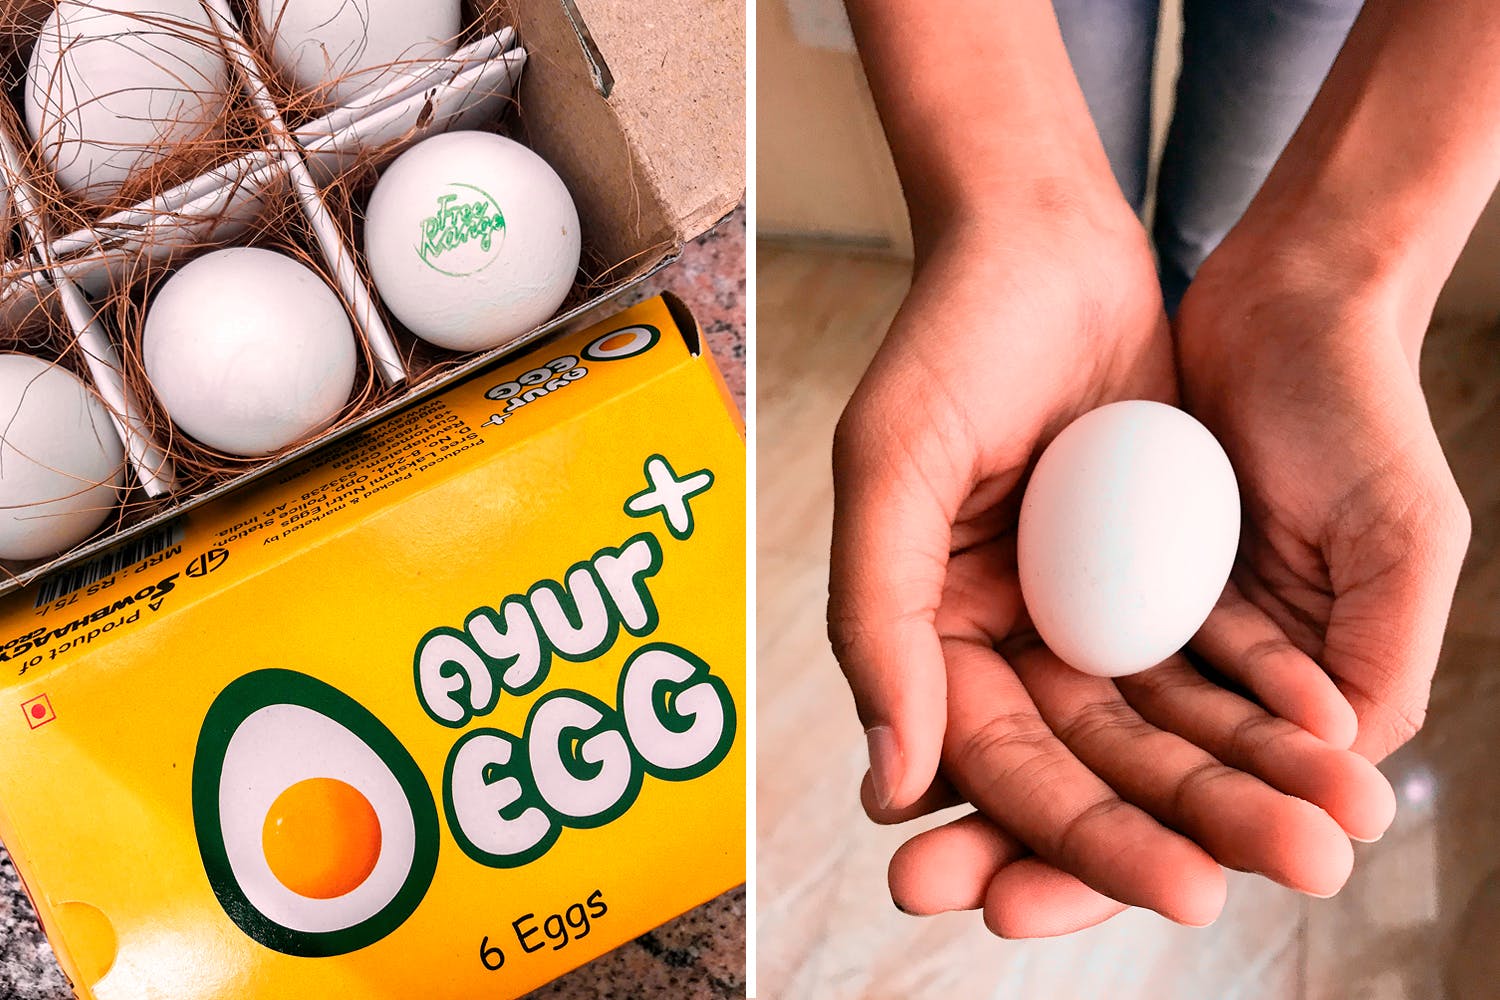 Egg,Egg,Food,Hand,Egg white